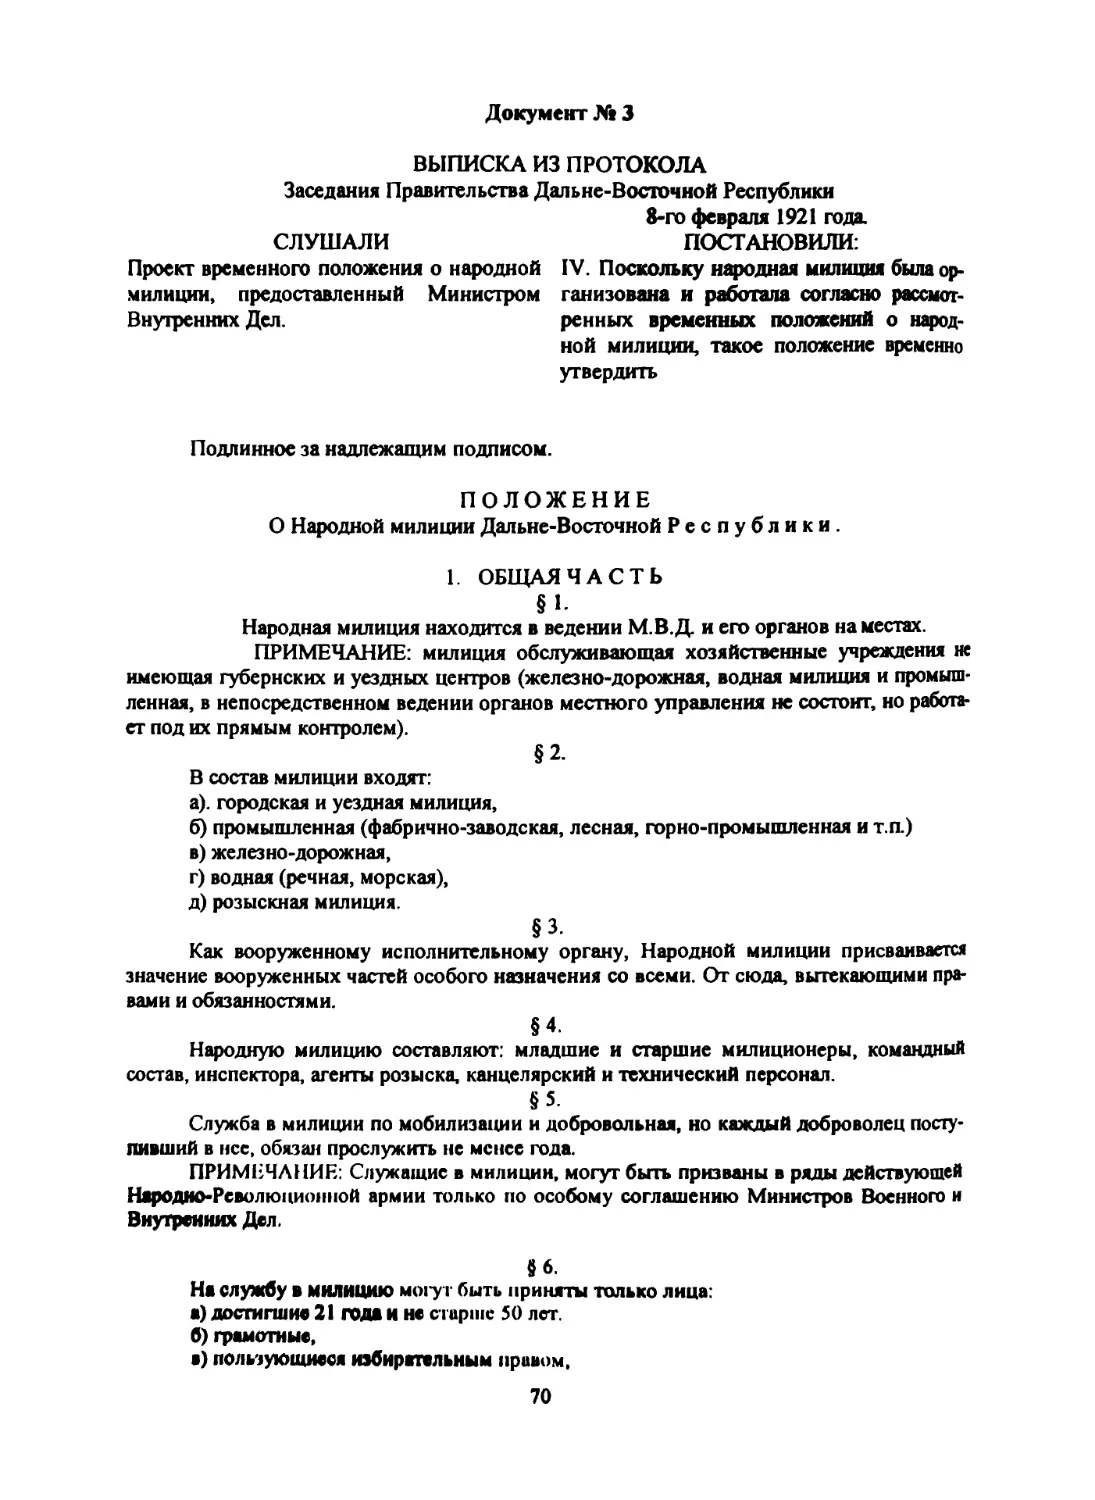 Документ № 3 Выписка из протокола заседания правительства ДВР об утверждении временного «Положения о народной милиции ДВР» от 8 февраля 1921 г.